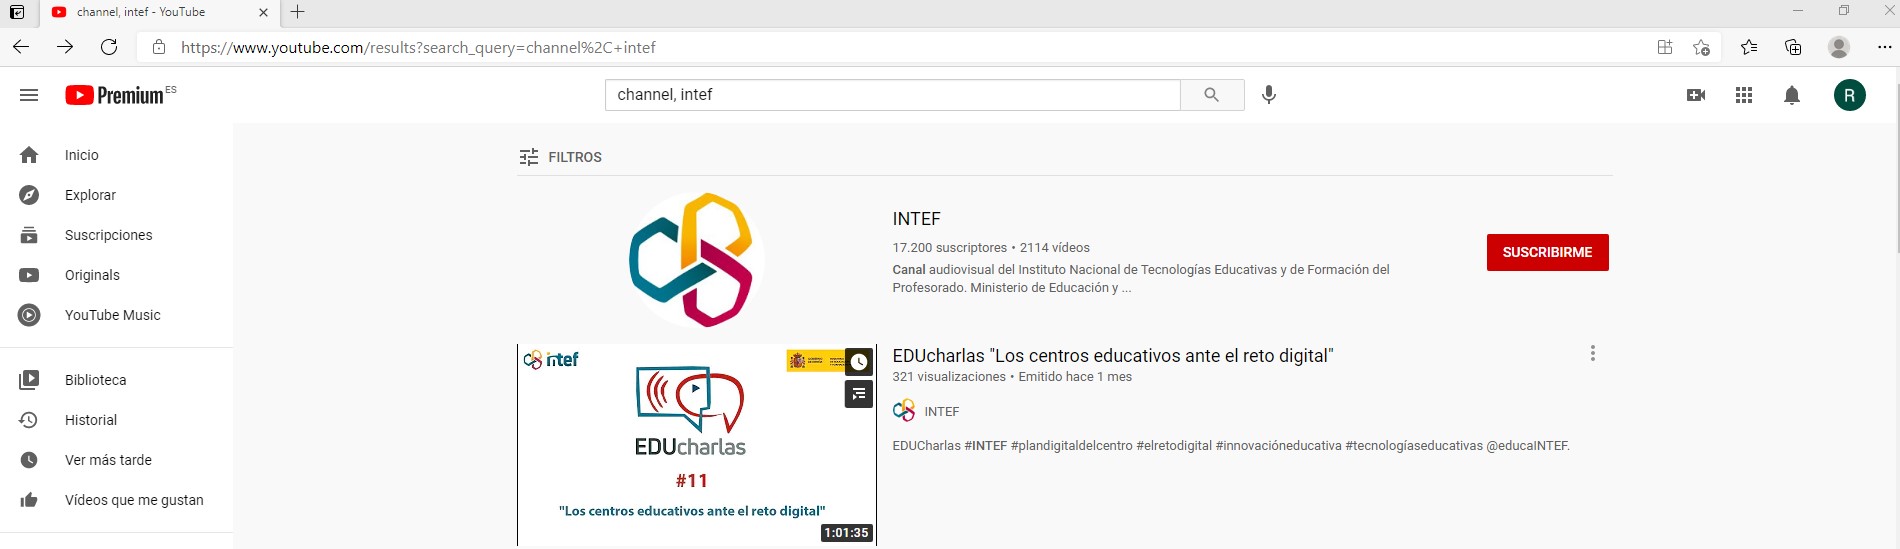 Imagen de cómo hacer la búsqueda del canal INTEF en YouTube